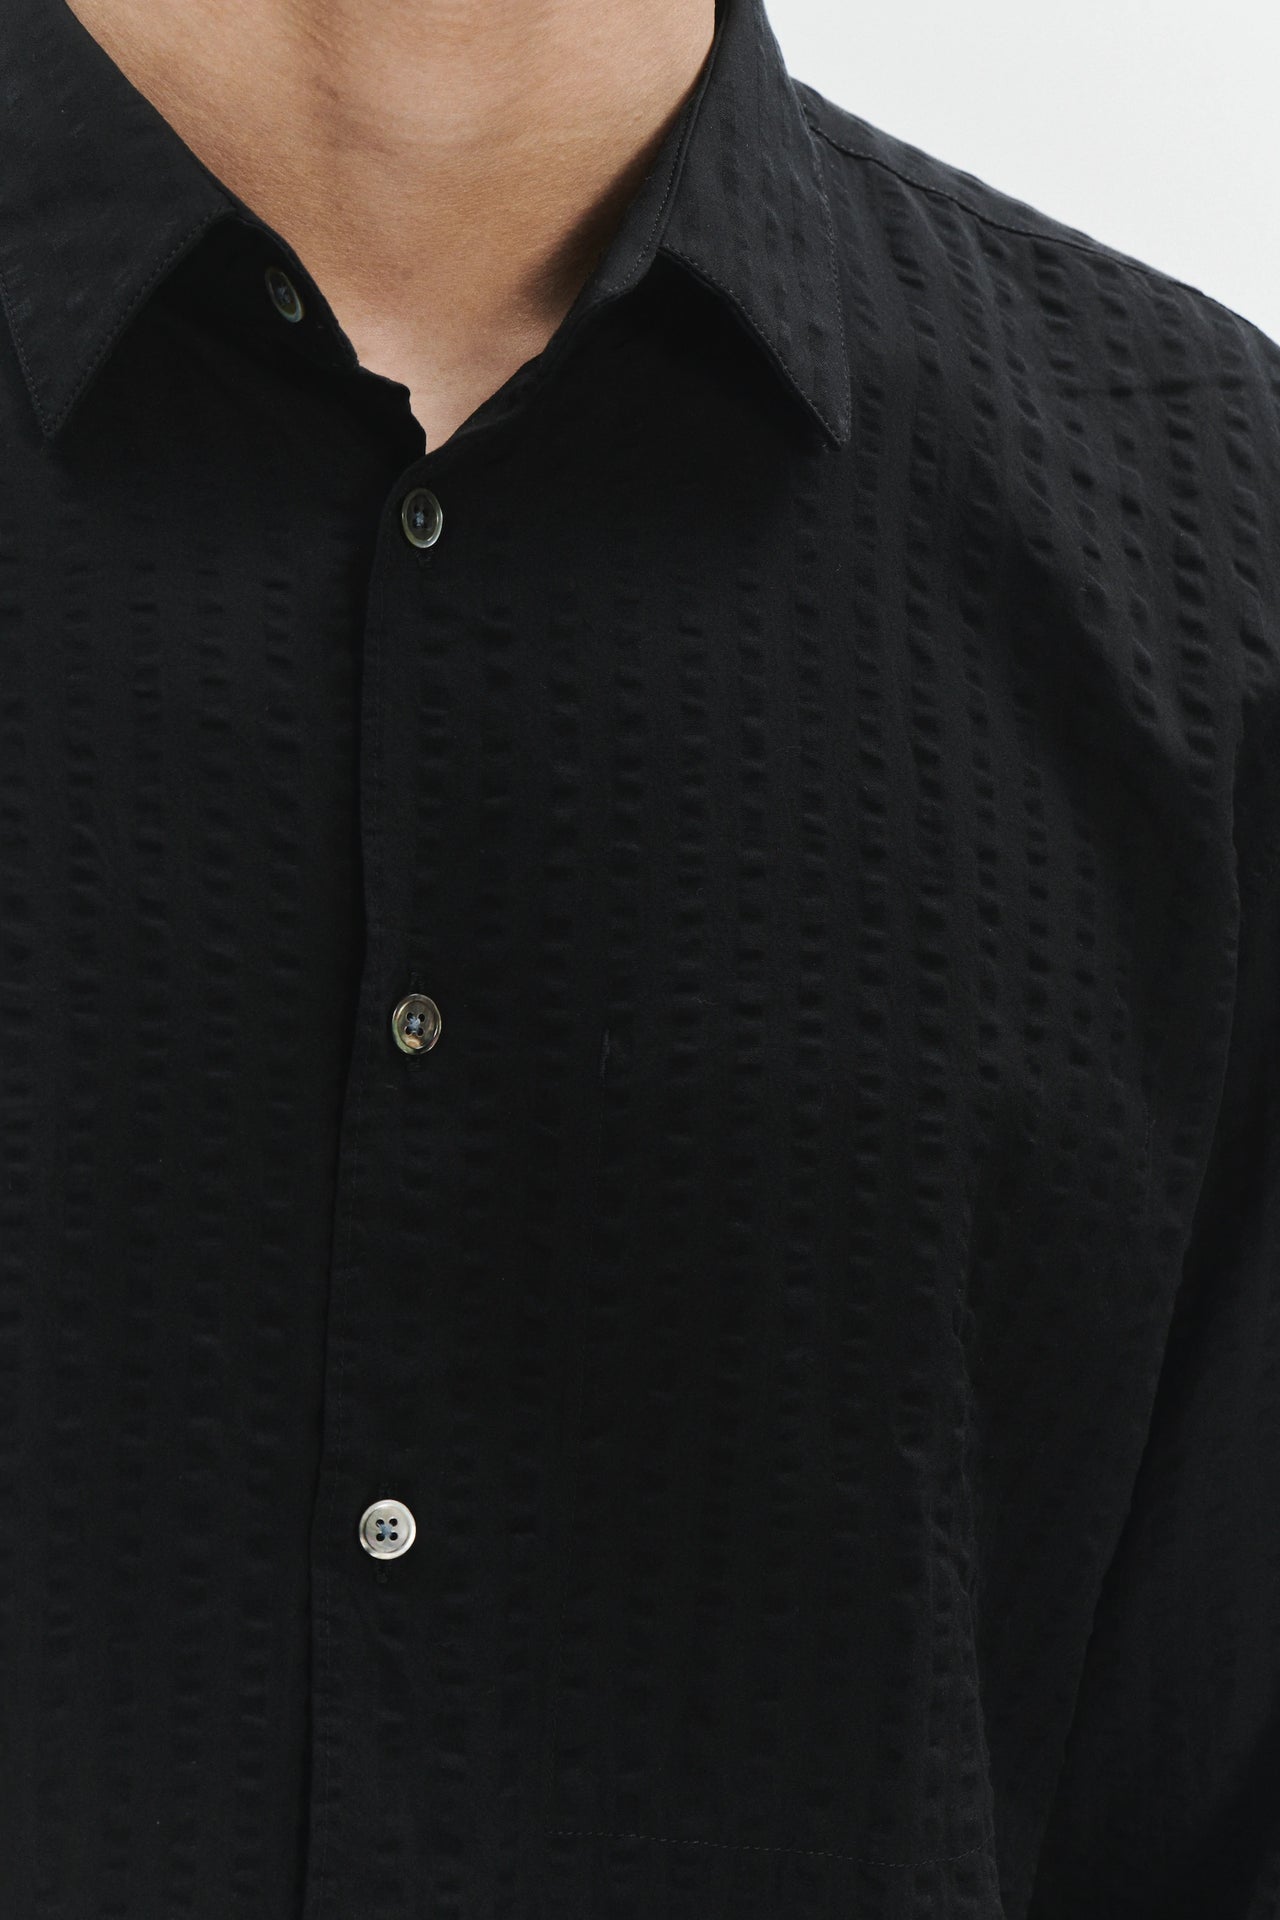 Feel Good Shirt in a Black Fine Portuguese Lyocell Seersucker